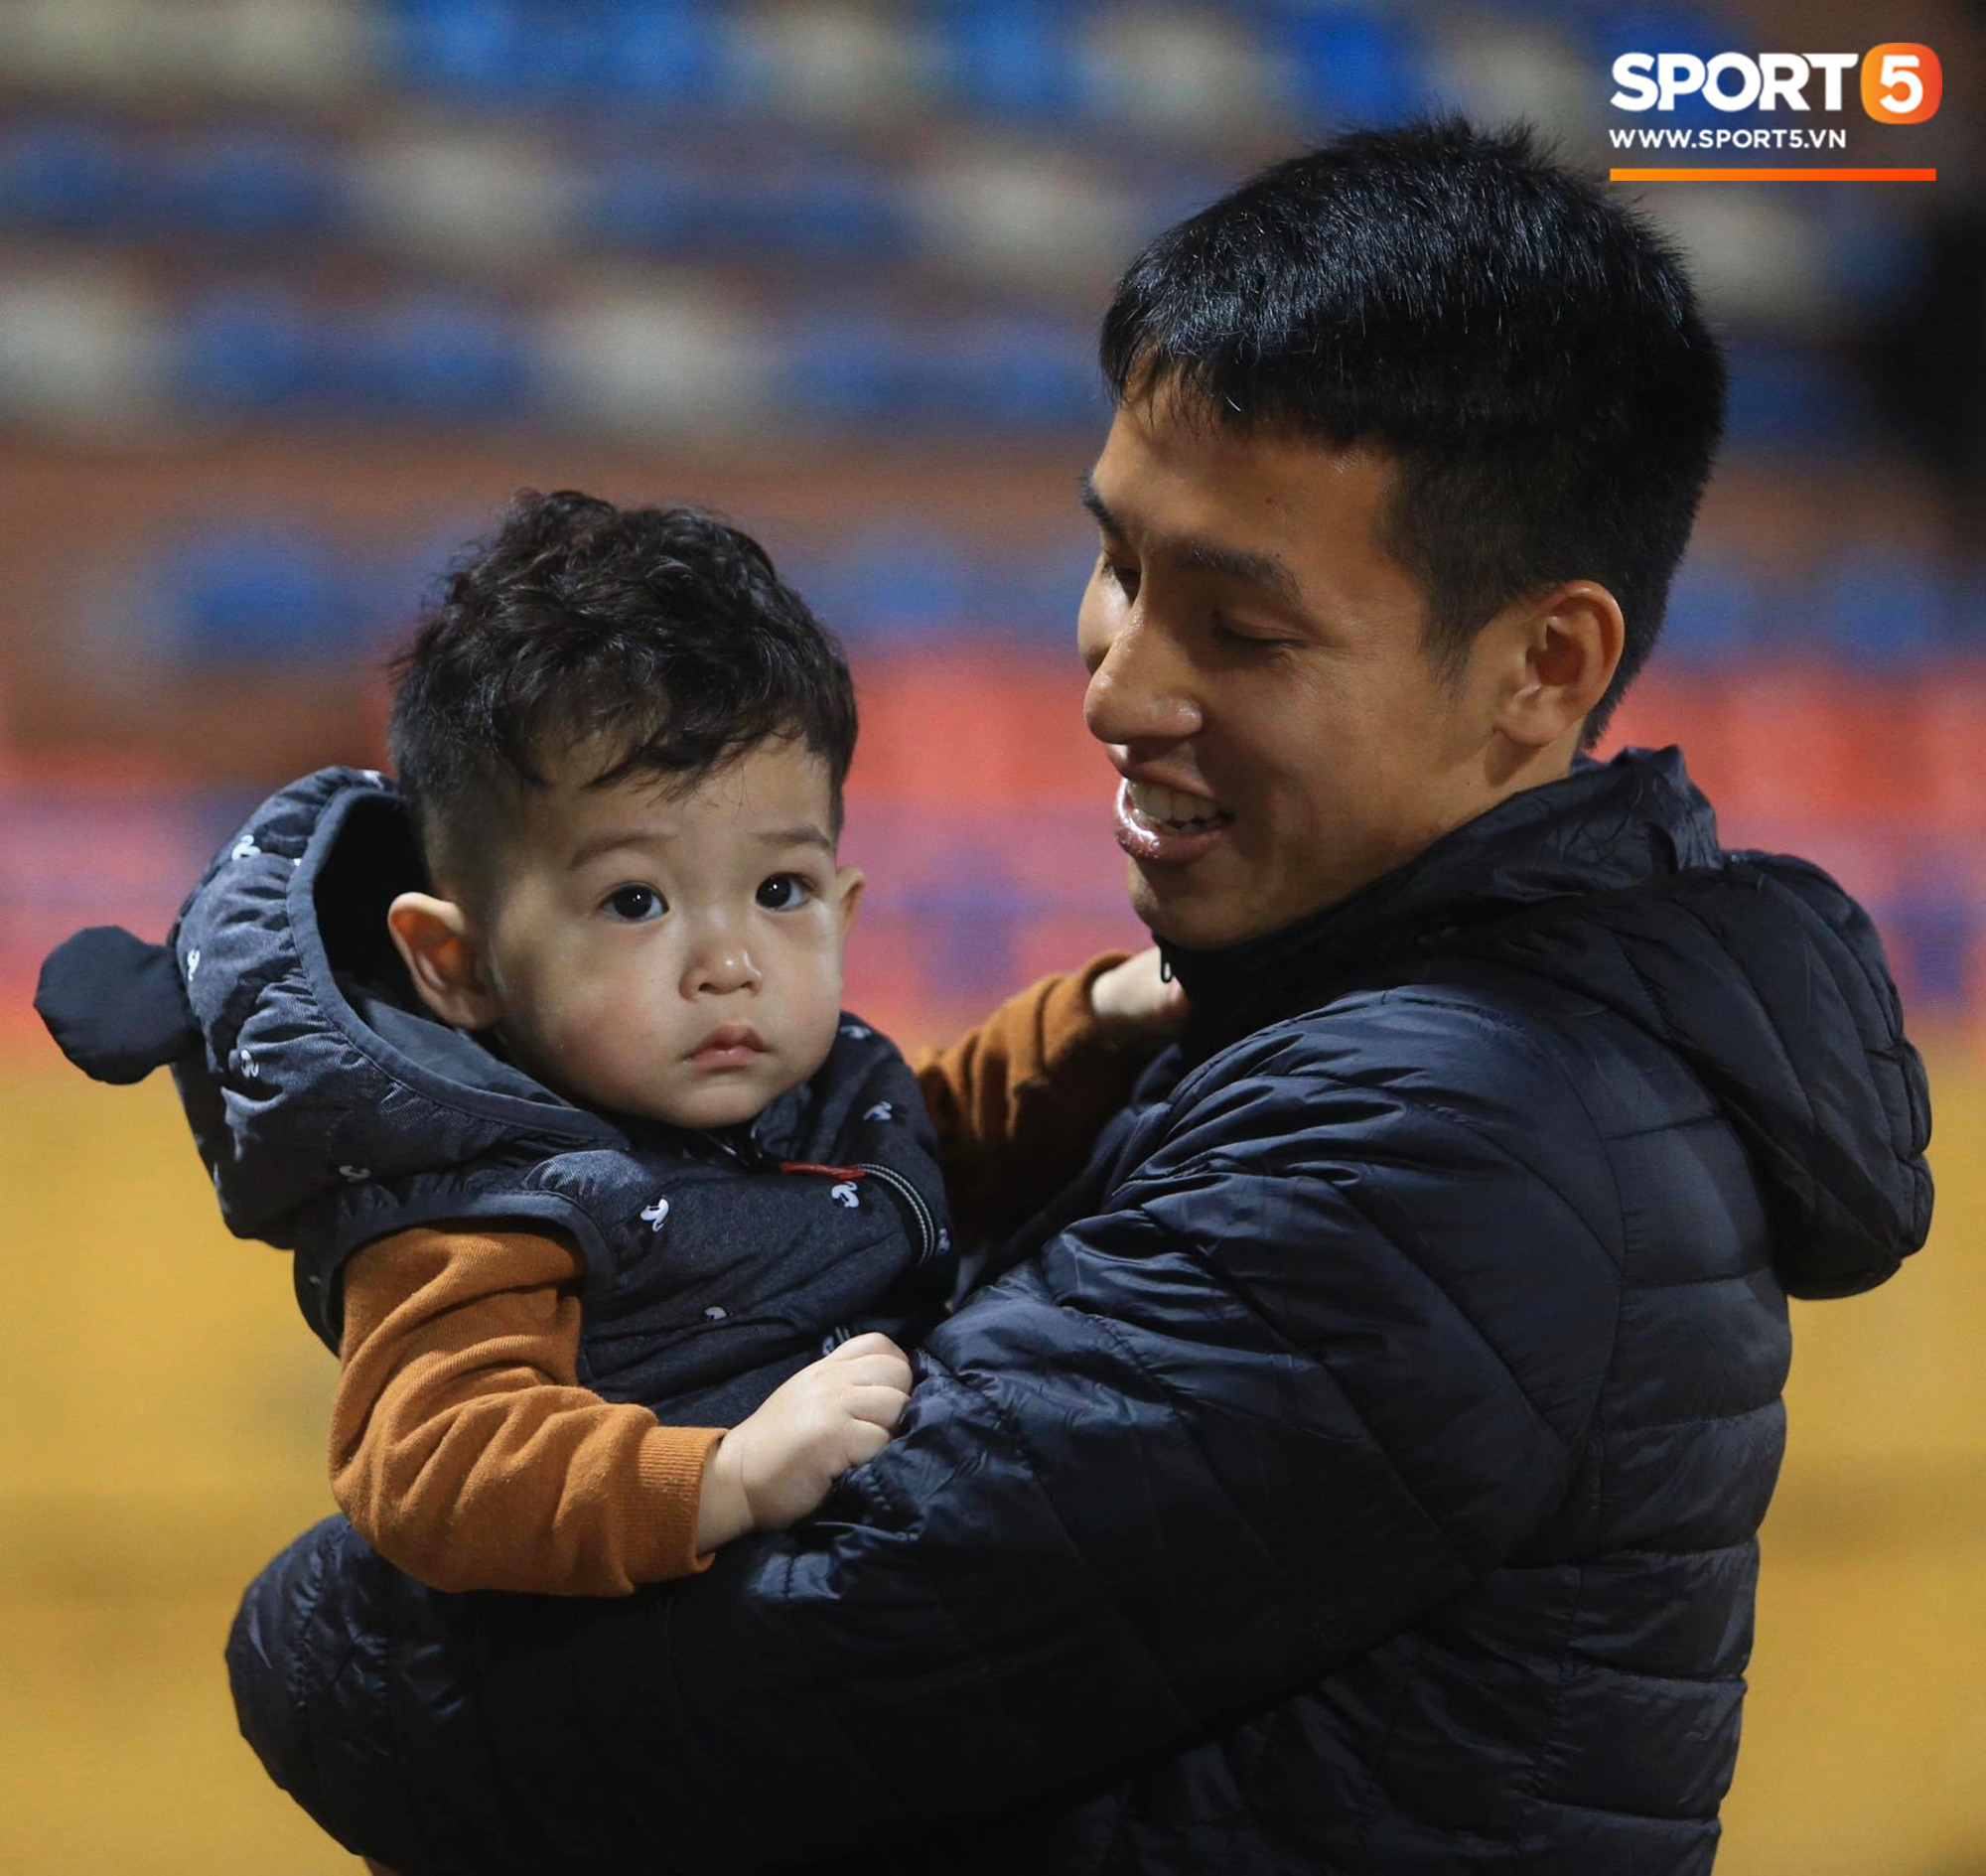 Con trai Hùng Dũng tinh nghịch trên sân trước trận Hà Nội FC gặp CLB Bình Dương - Ảnh 1.